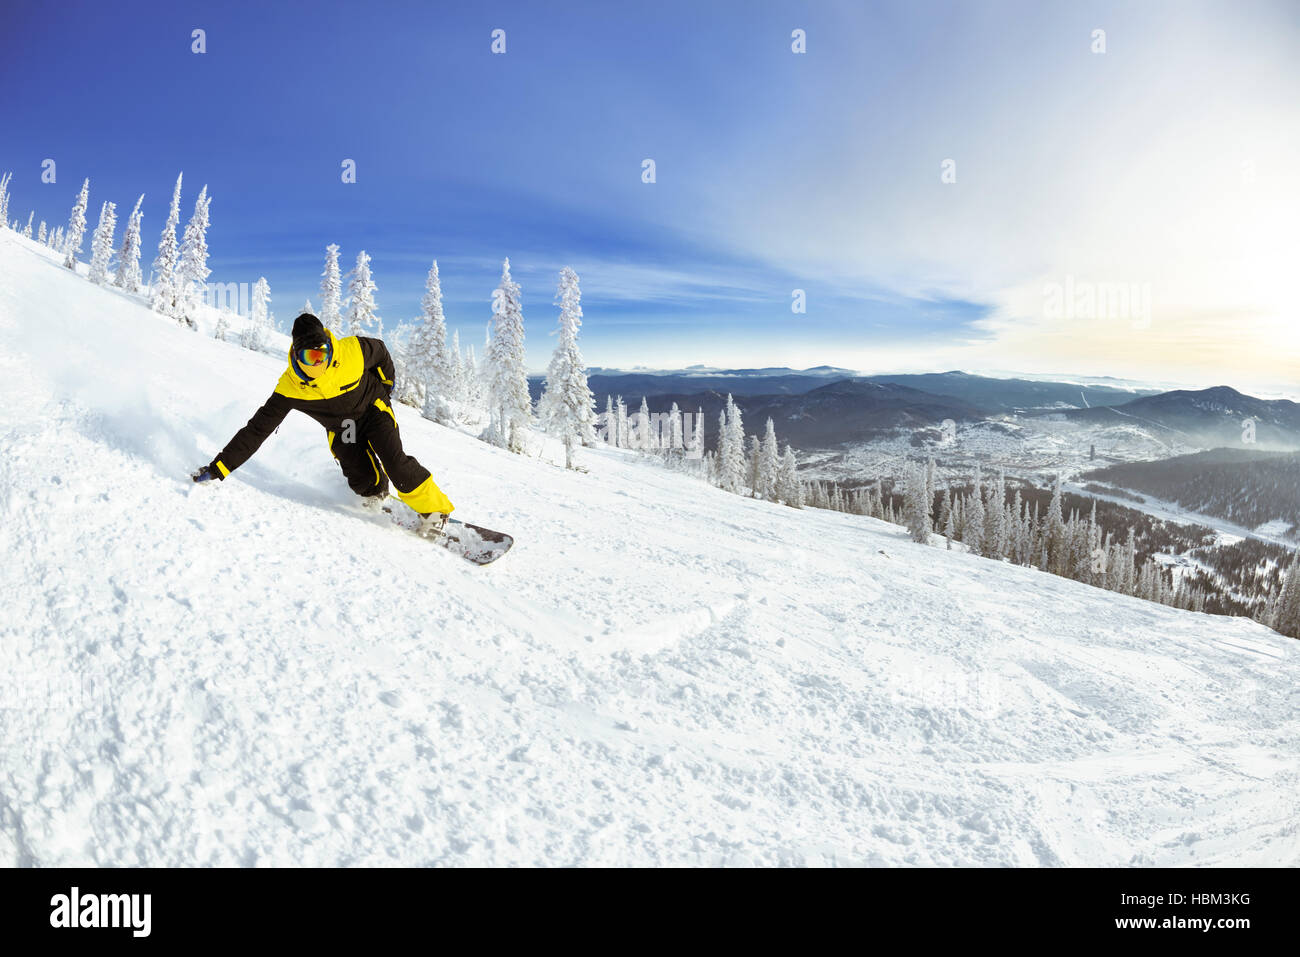 Snowboarder slope downhill mountains ski Stock Photo